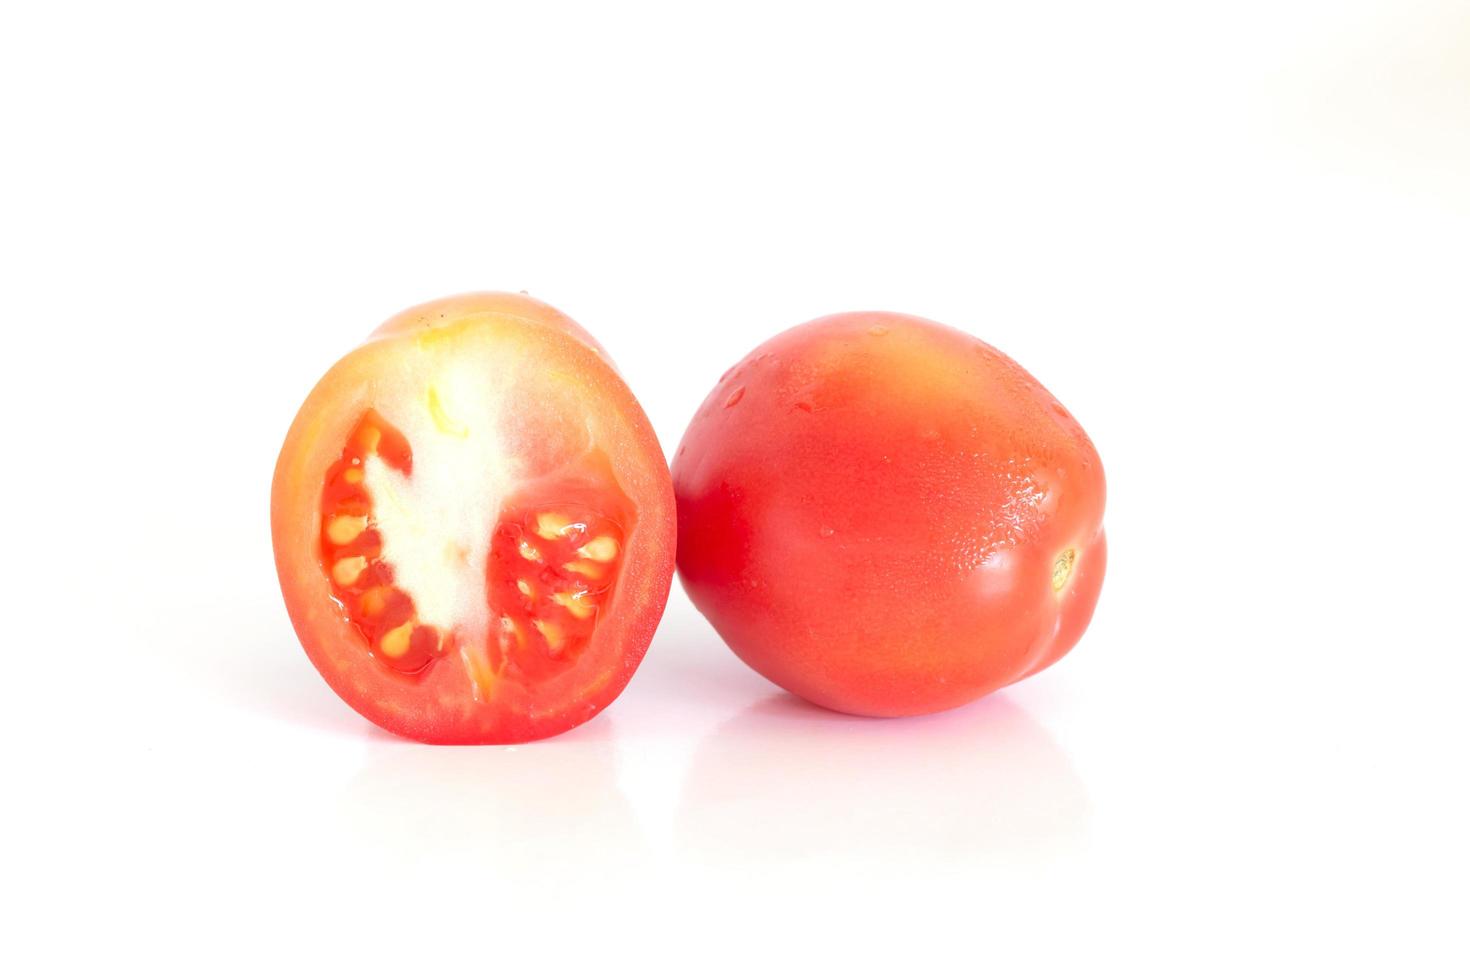 frische Tomaten auf weißem Hintergrund foto